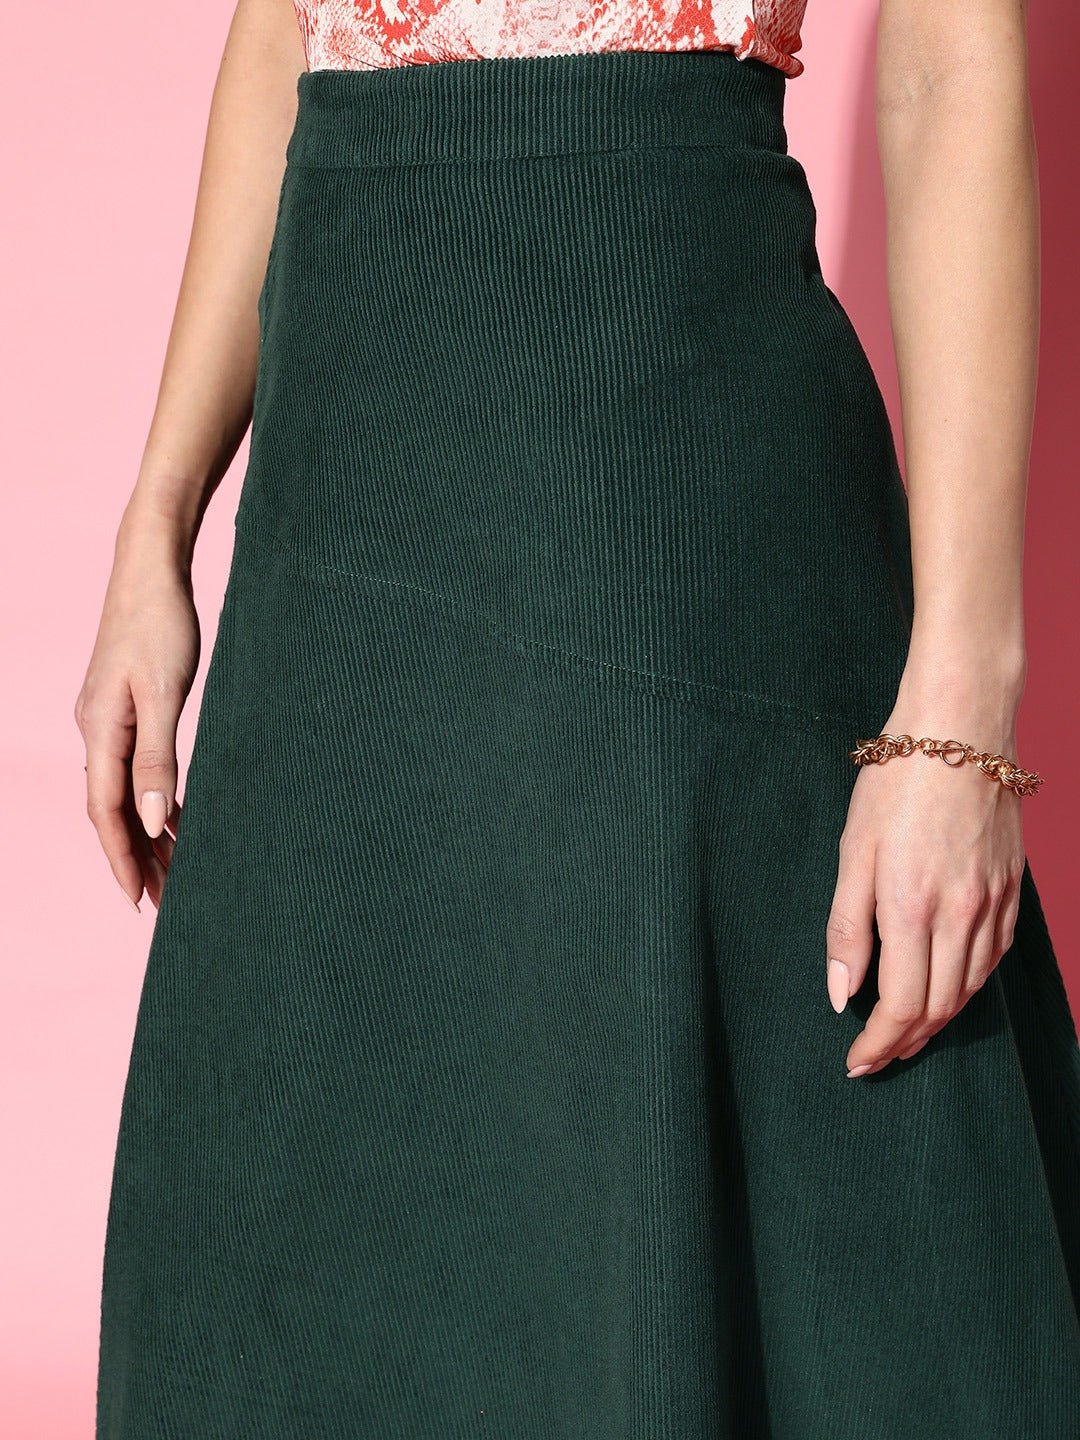 Folk Republic Women Solid Green High-Rise Waist Zipper-Up Cotton Flared A-Line Midi Skirt - #folk republic#